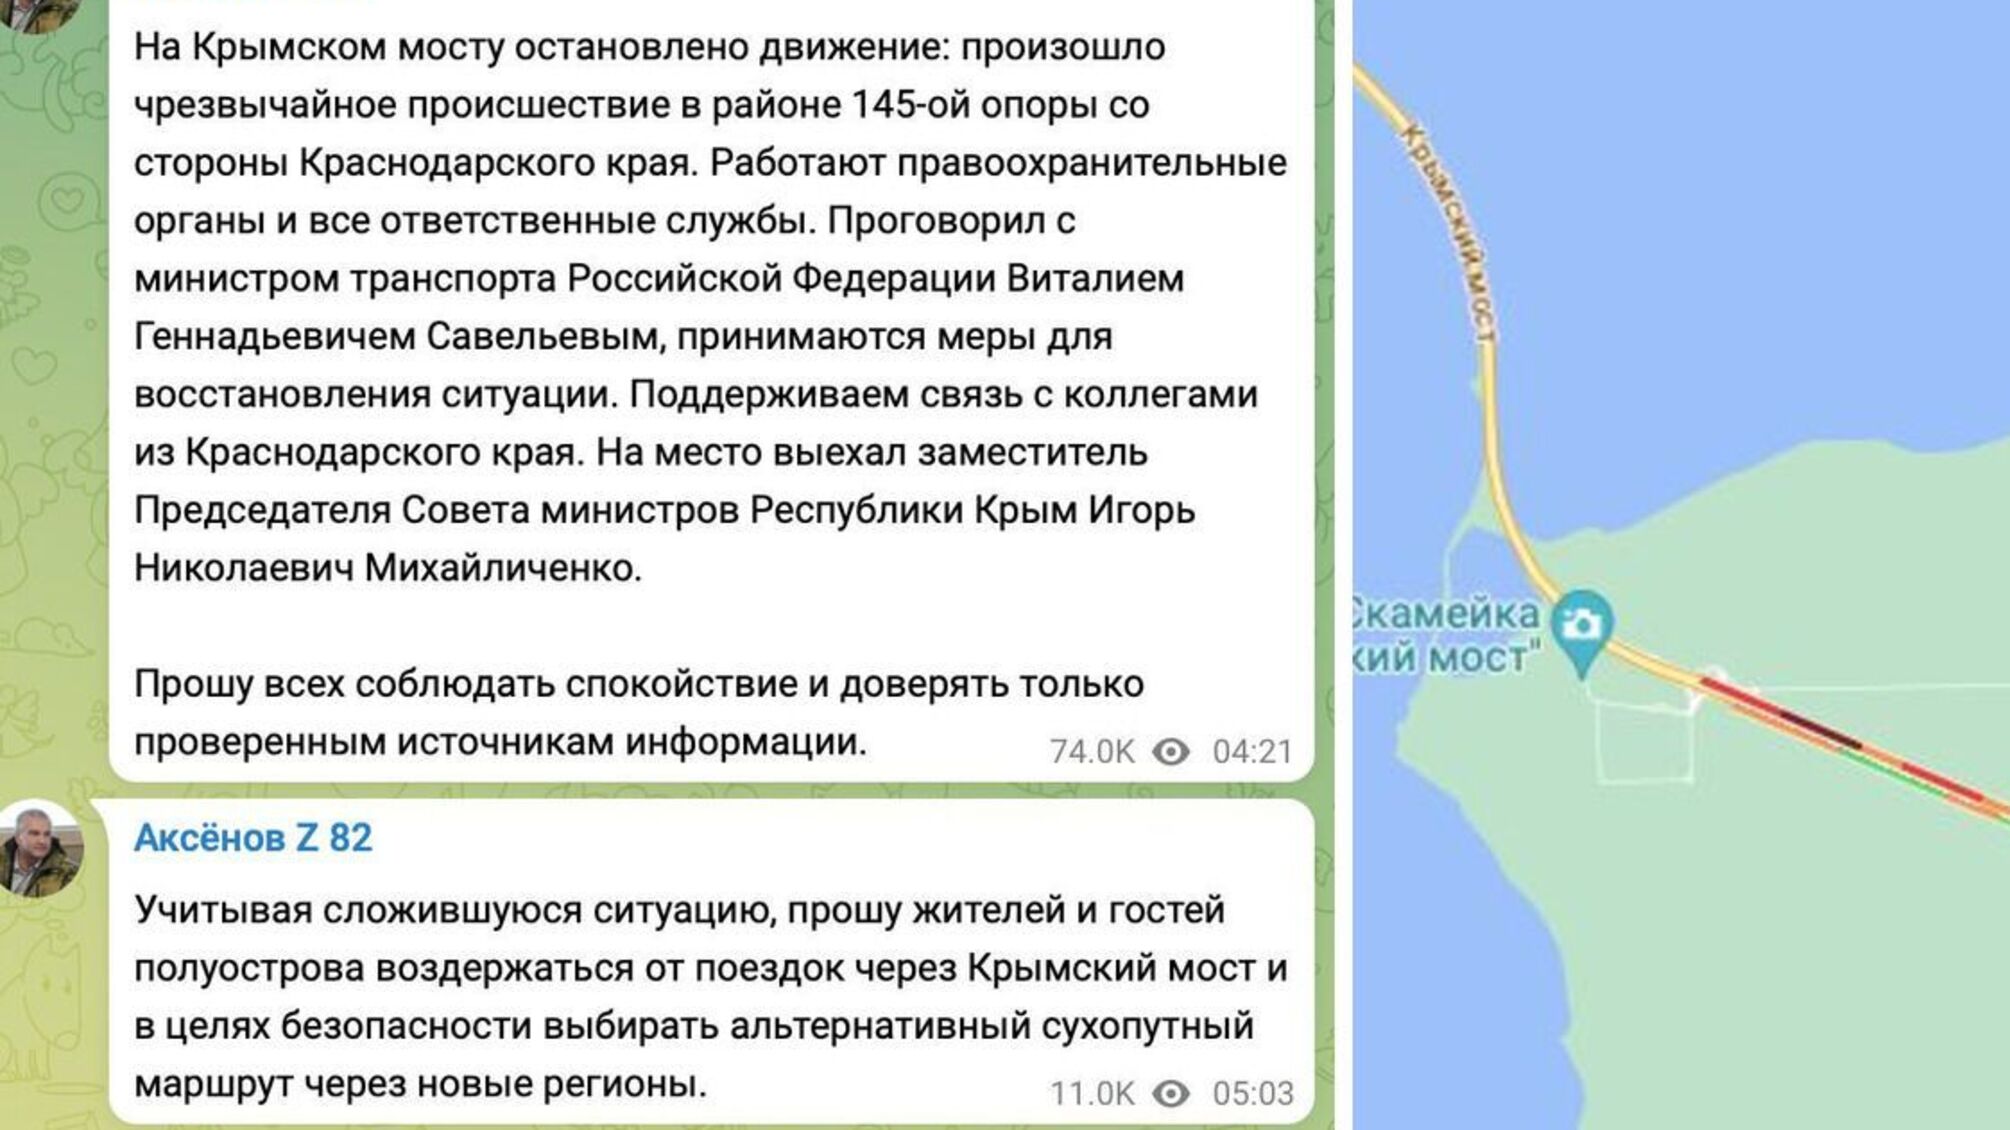 Взрыв на Крымском мосту: повреждения повлекли за собой перекрытия и пробки, ожидаются официальные данные